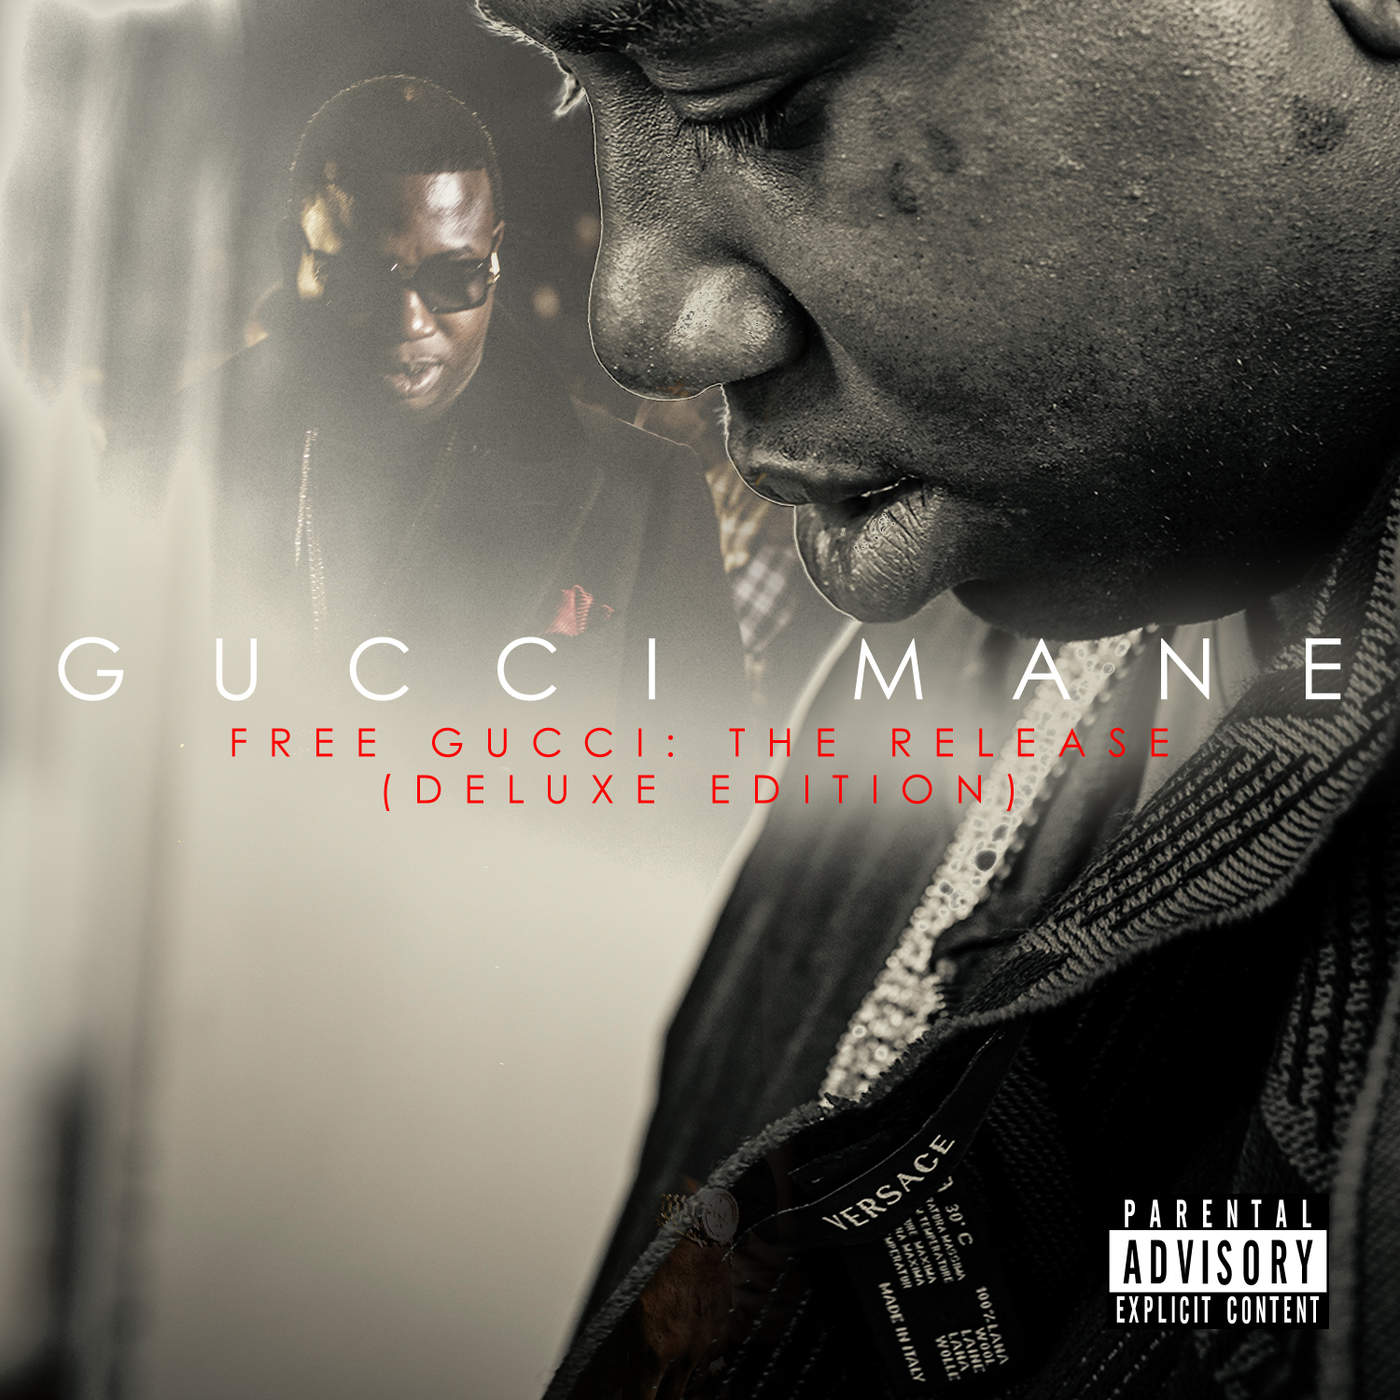 Efternavn temperament Statistisk BPM for Confused (Gucci Mane) - GetSongBPM